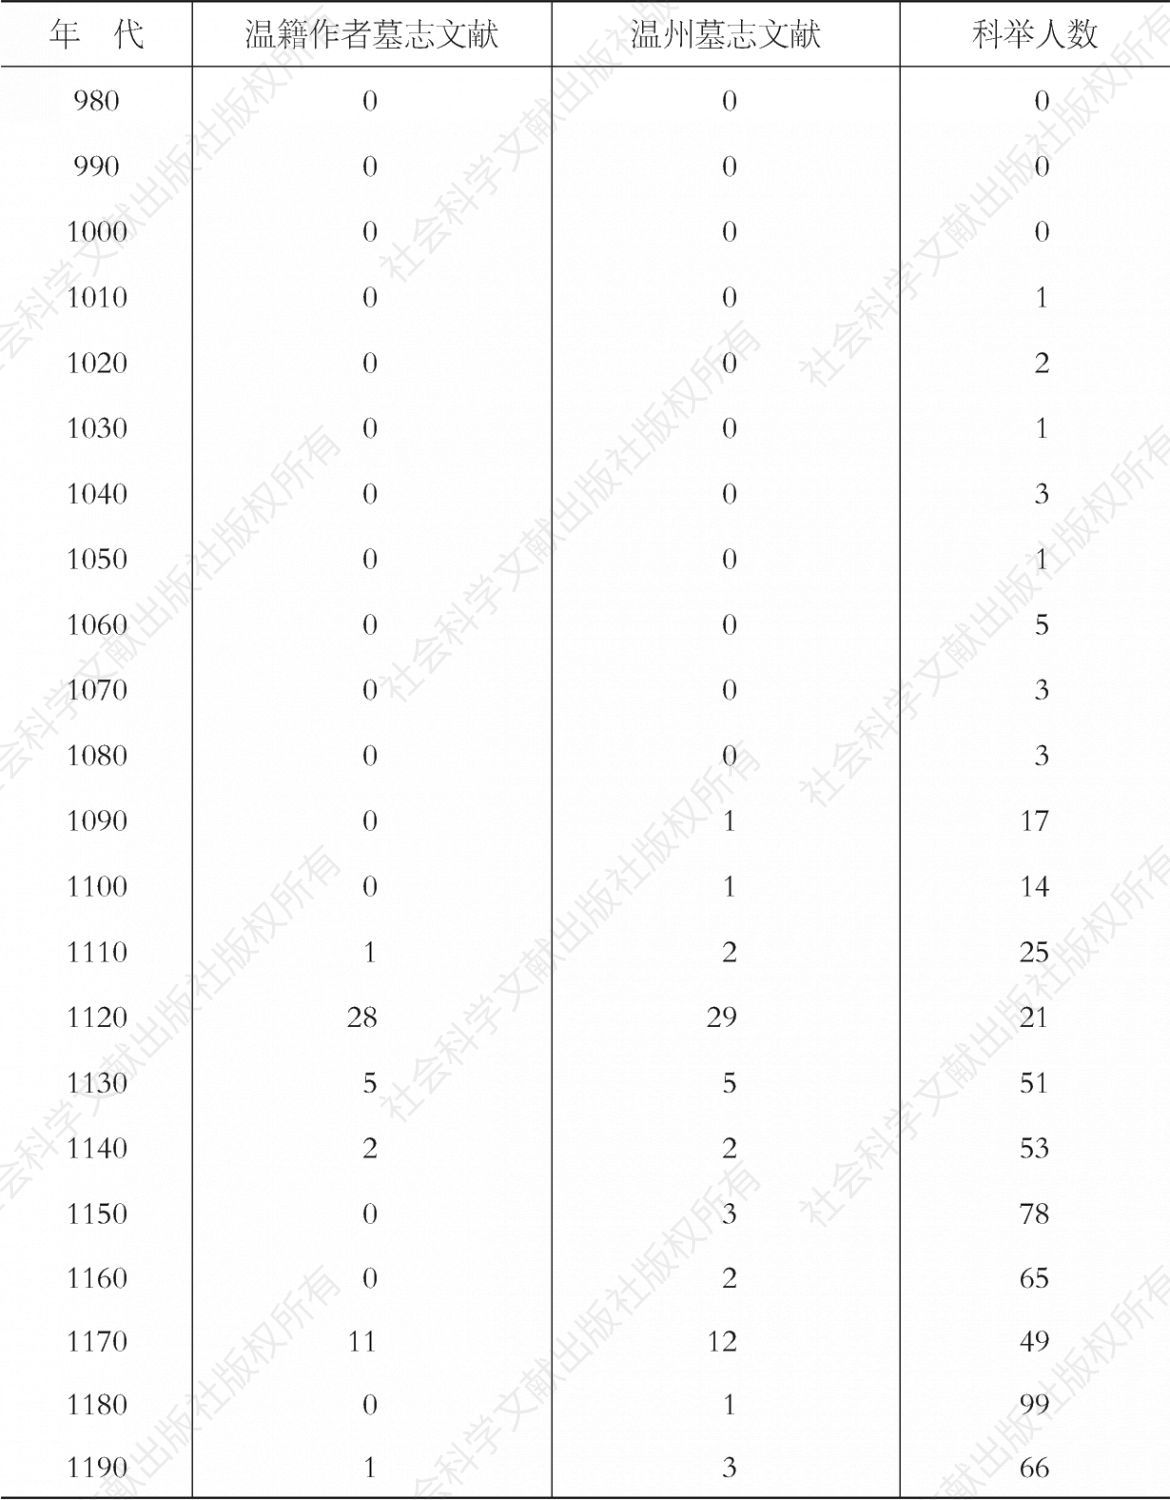 表4-1 温州各年代墓志文献数量与科举人数